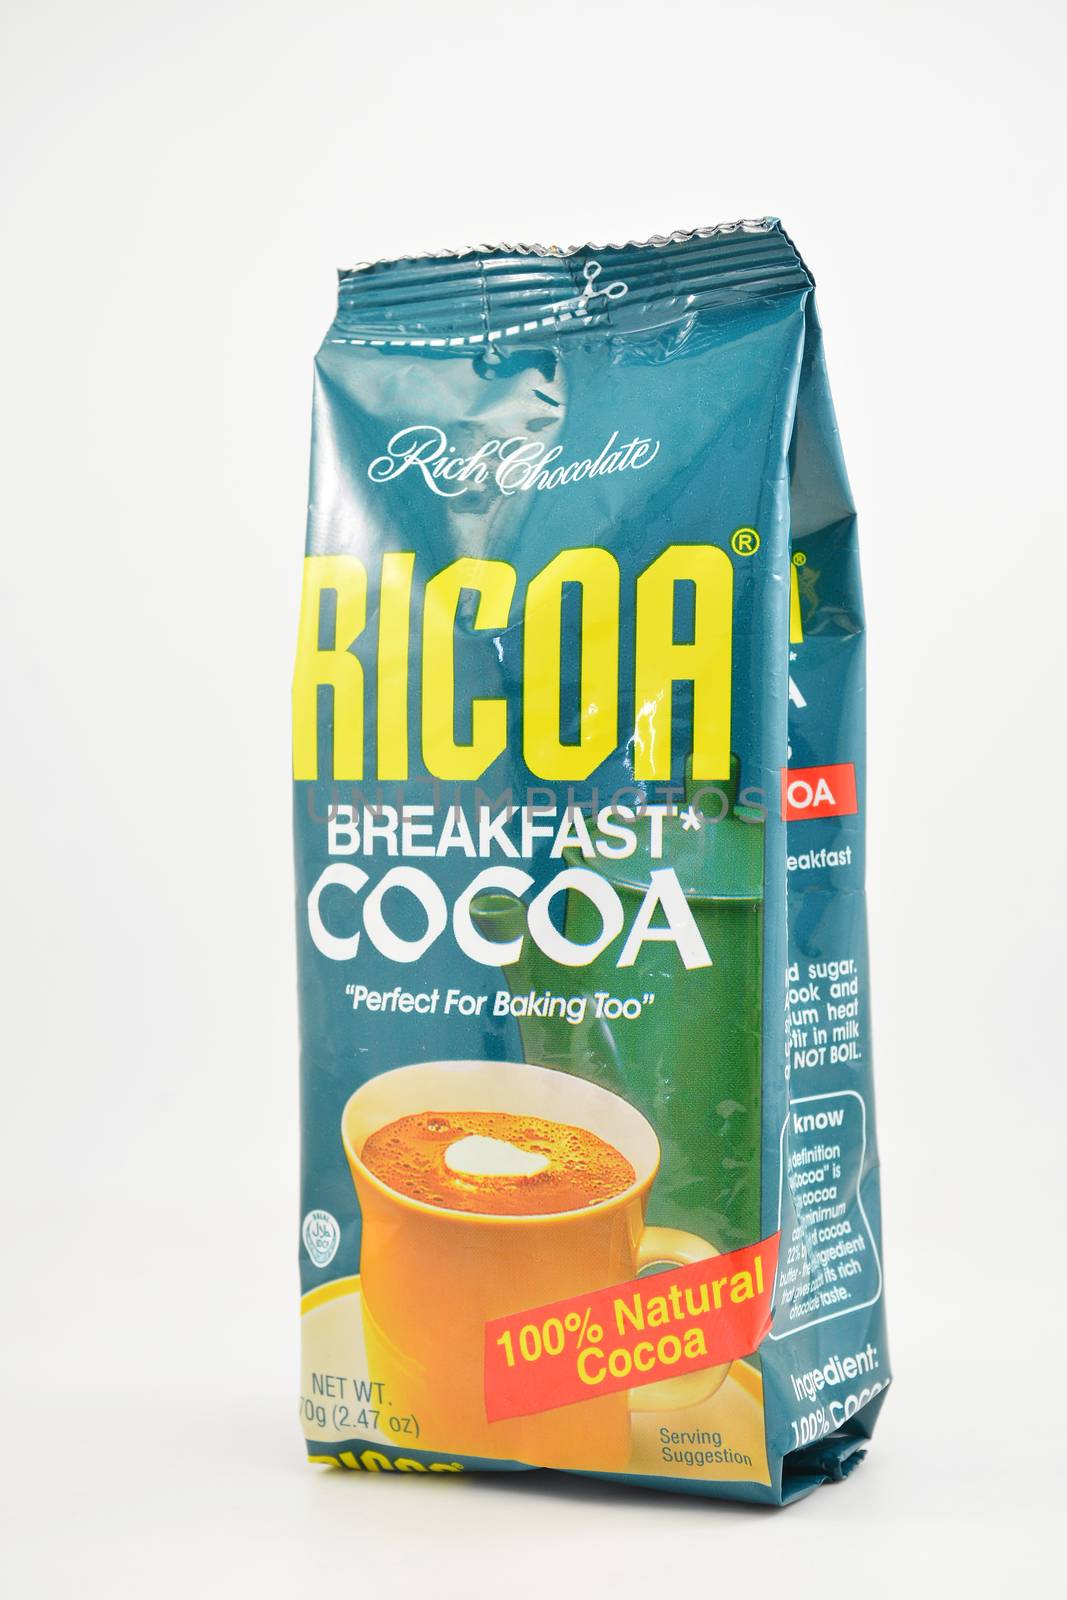 Ricoa breakfast cocoa powder in Manila, Philippines by imwaltersy